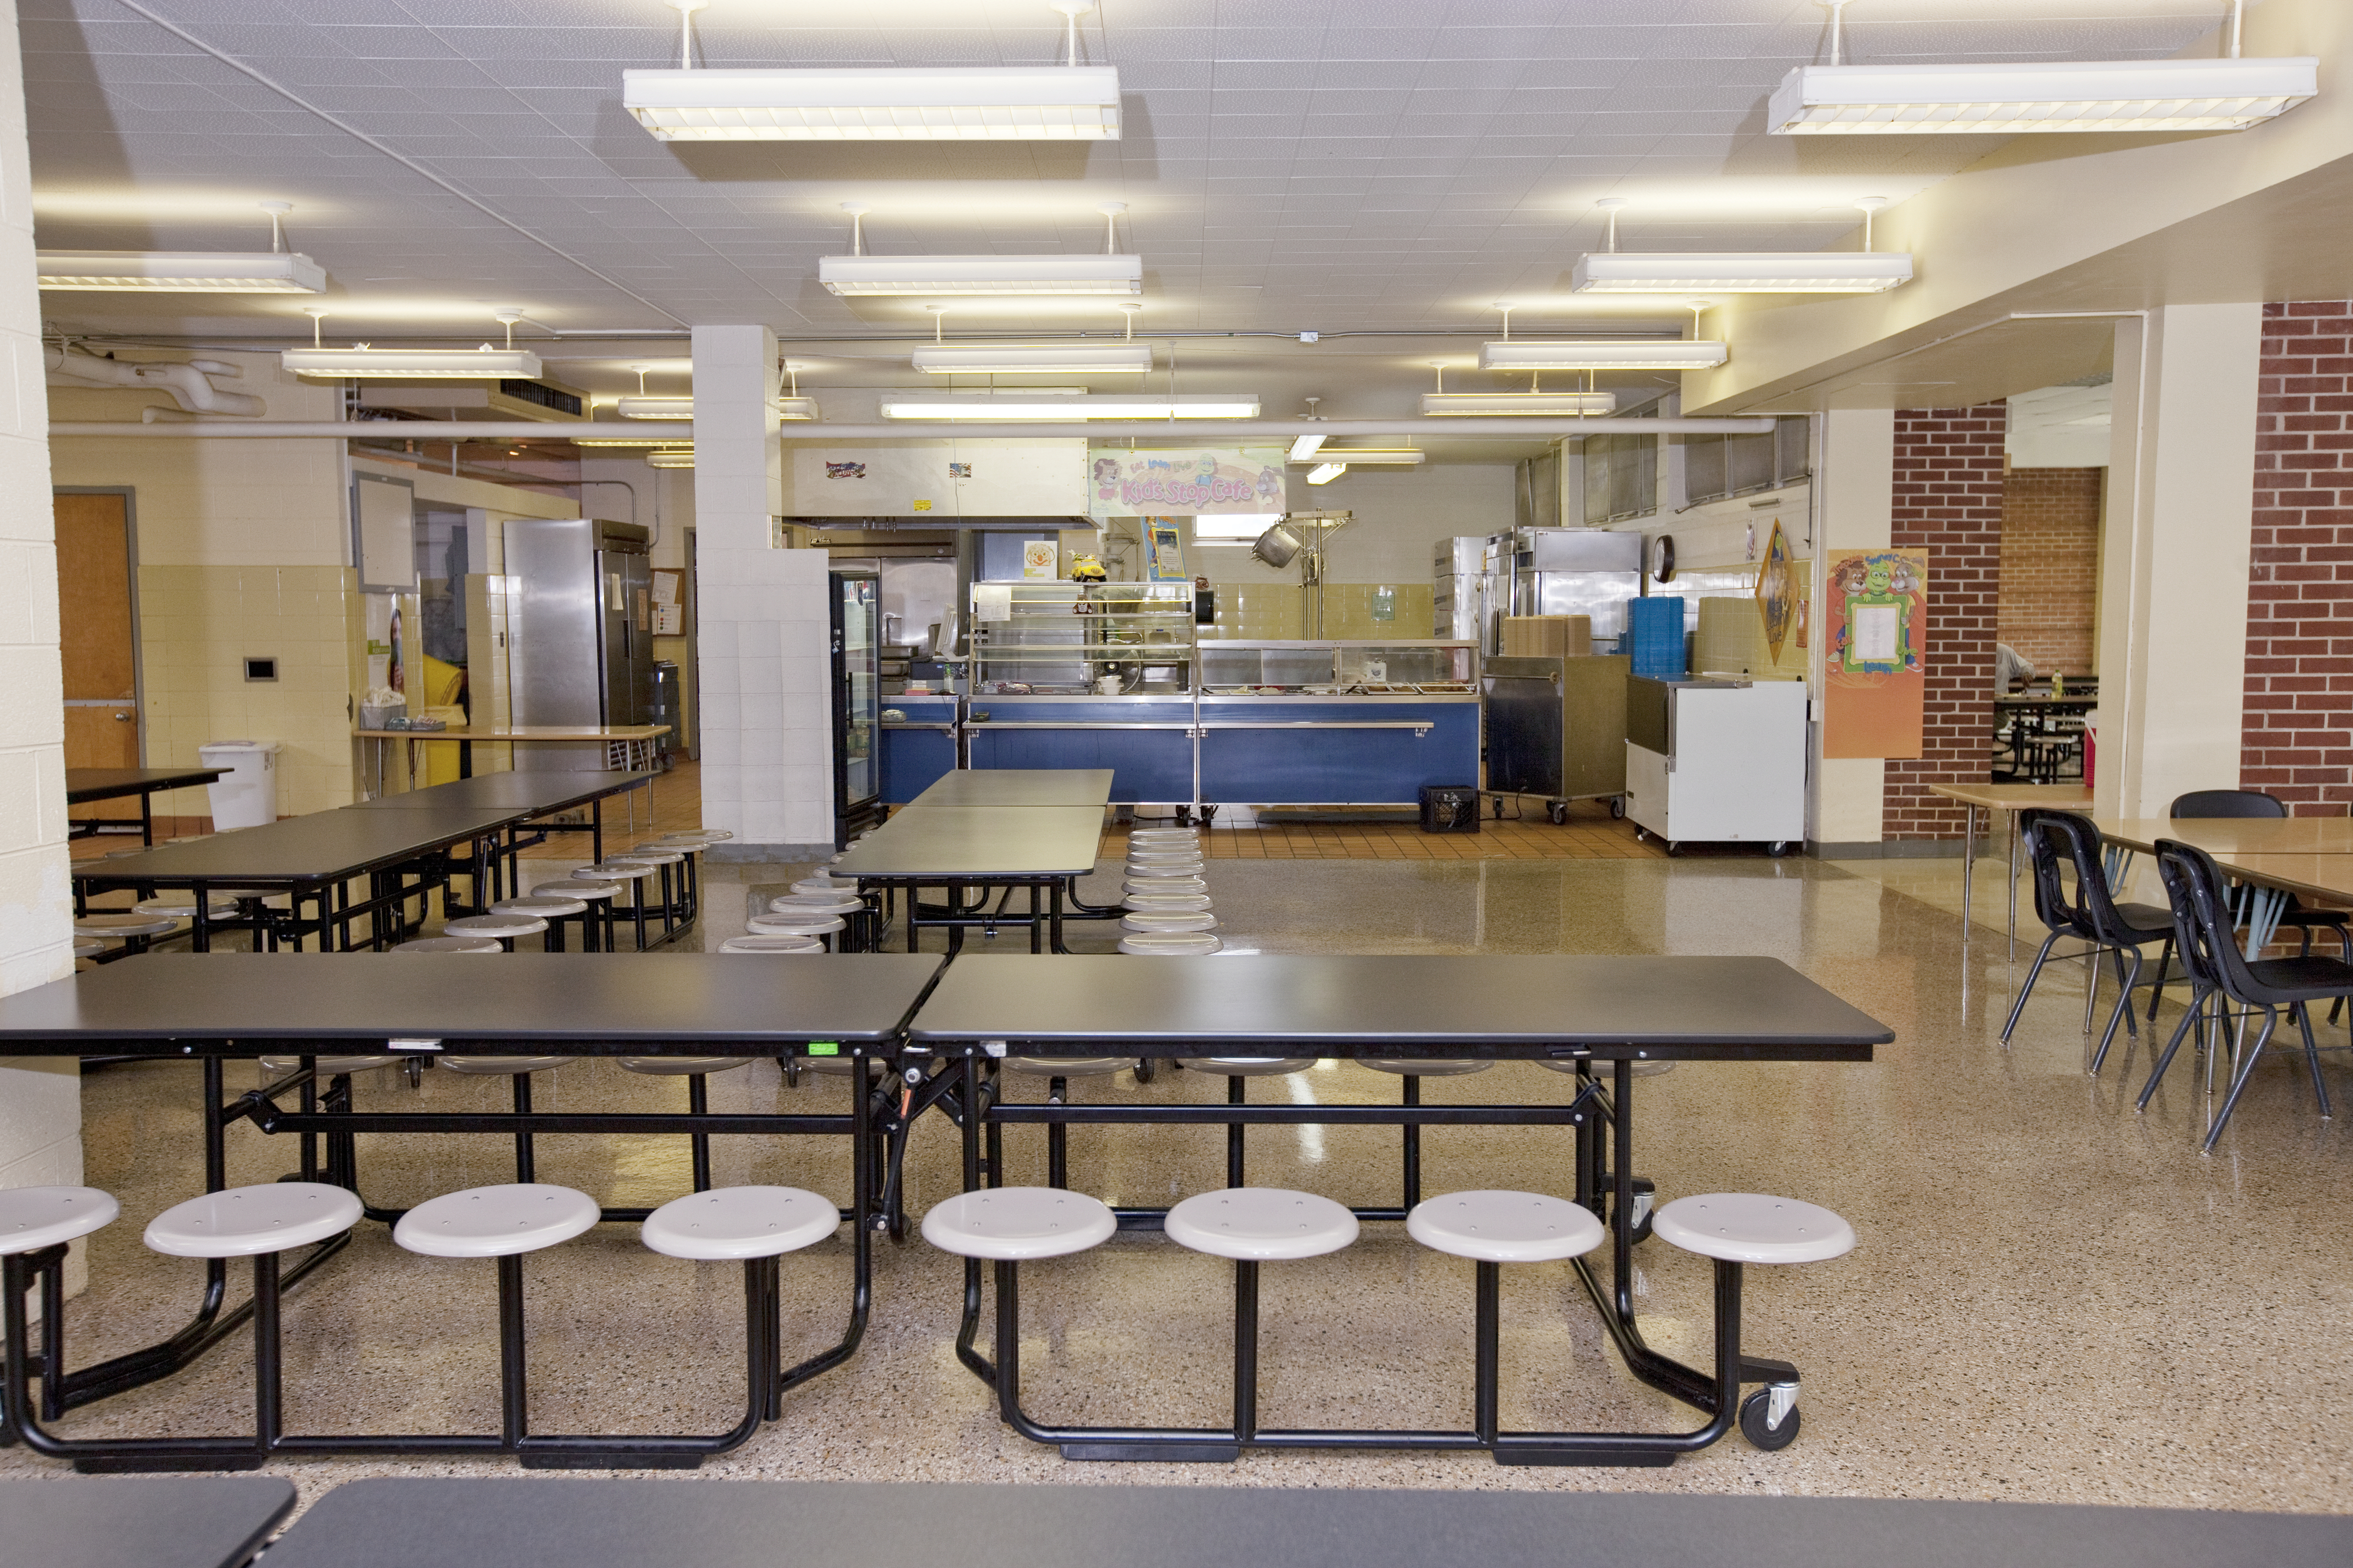 An empty school lunchroom